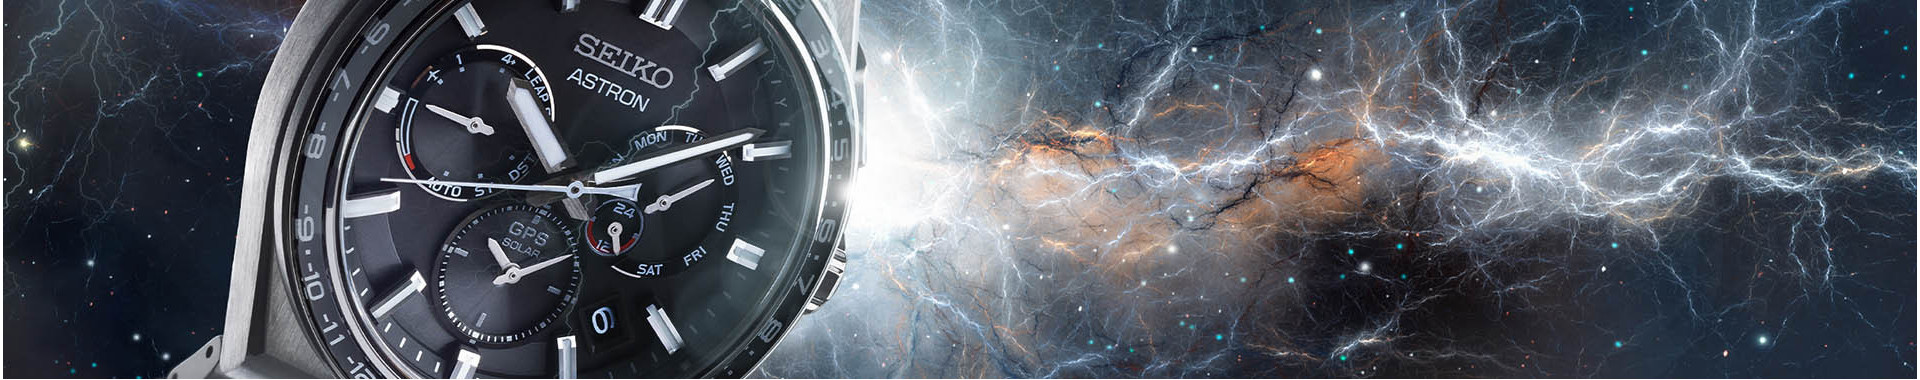 Seiko Astron : orologio gps solare - Seiko ufficiale